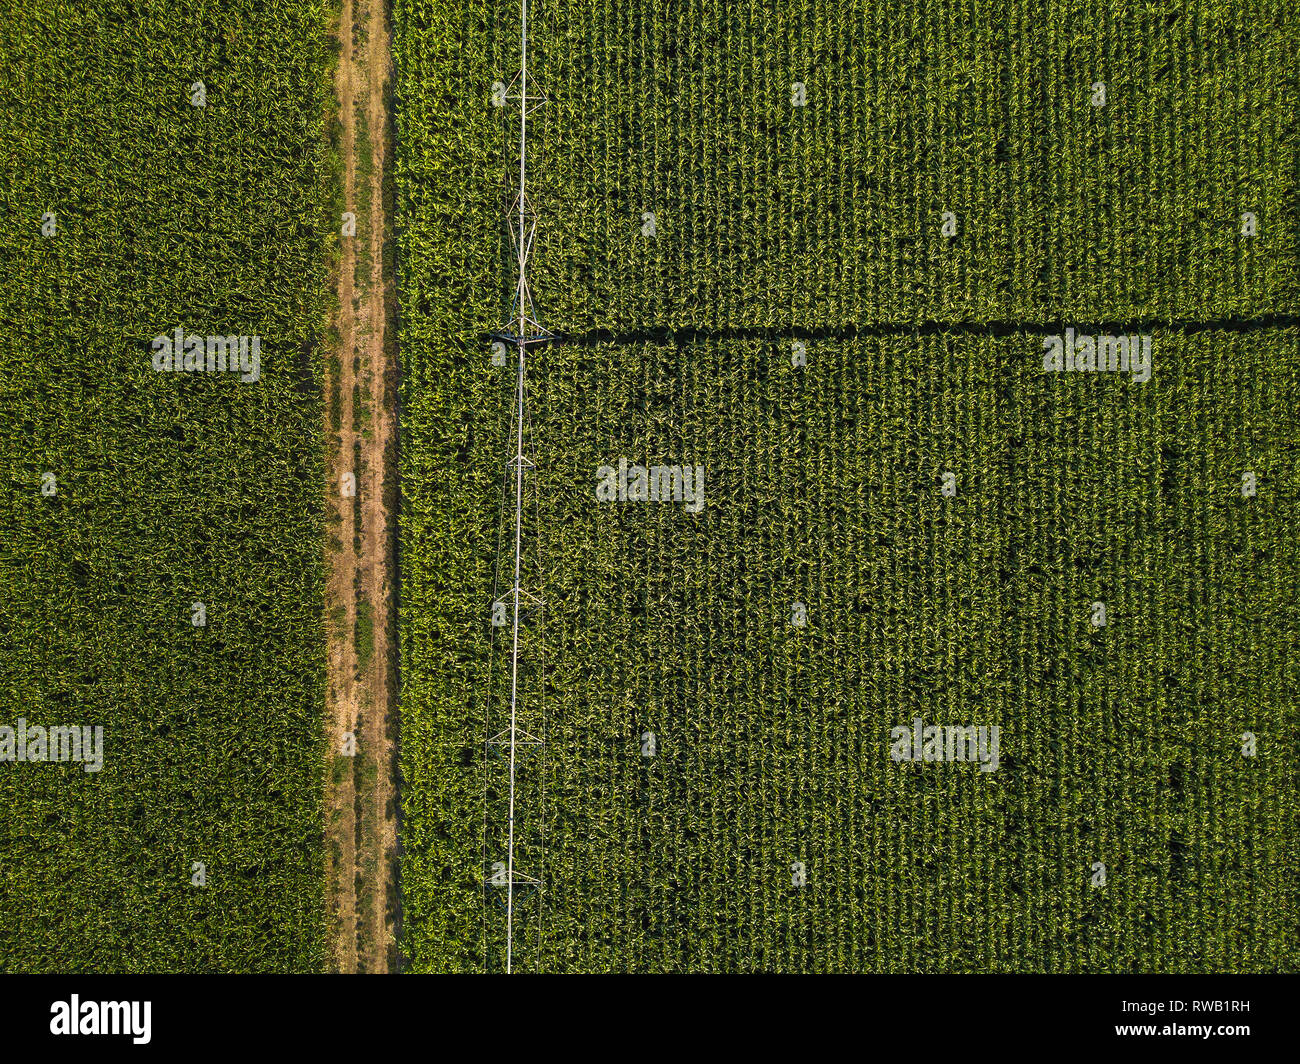 Drone fotografia, vista aerea di acqua impianto di irrigazione in cornfield coltivati, vista dall'alto Foto Stock